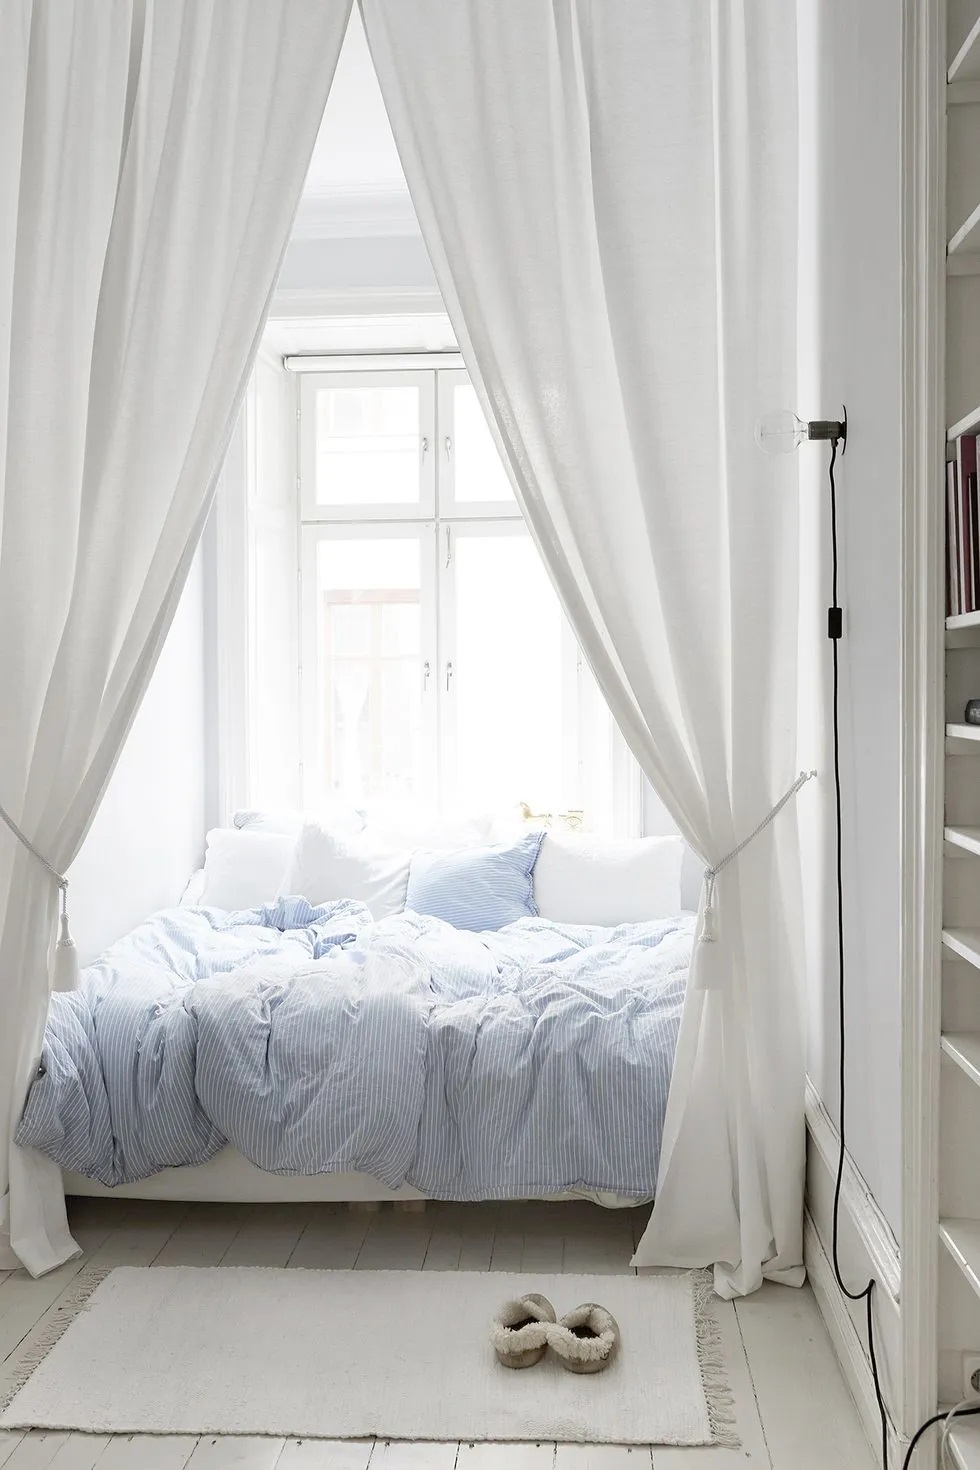 Treo những tấm rèm cao đến trần nhà xung quanh giường sẽ trông ấn tượng và mơ mộng hơn so với những chiếc rèm cửa kiểu cổ điển. Chăn ga gối đệm màu xanh da trời trong phòng ngủ này tạo thêm điểm nhấn vui tươi.